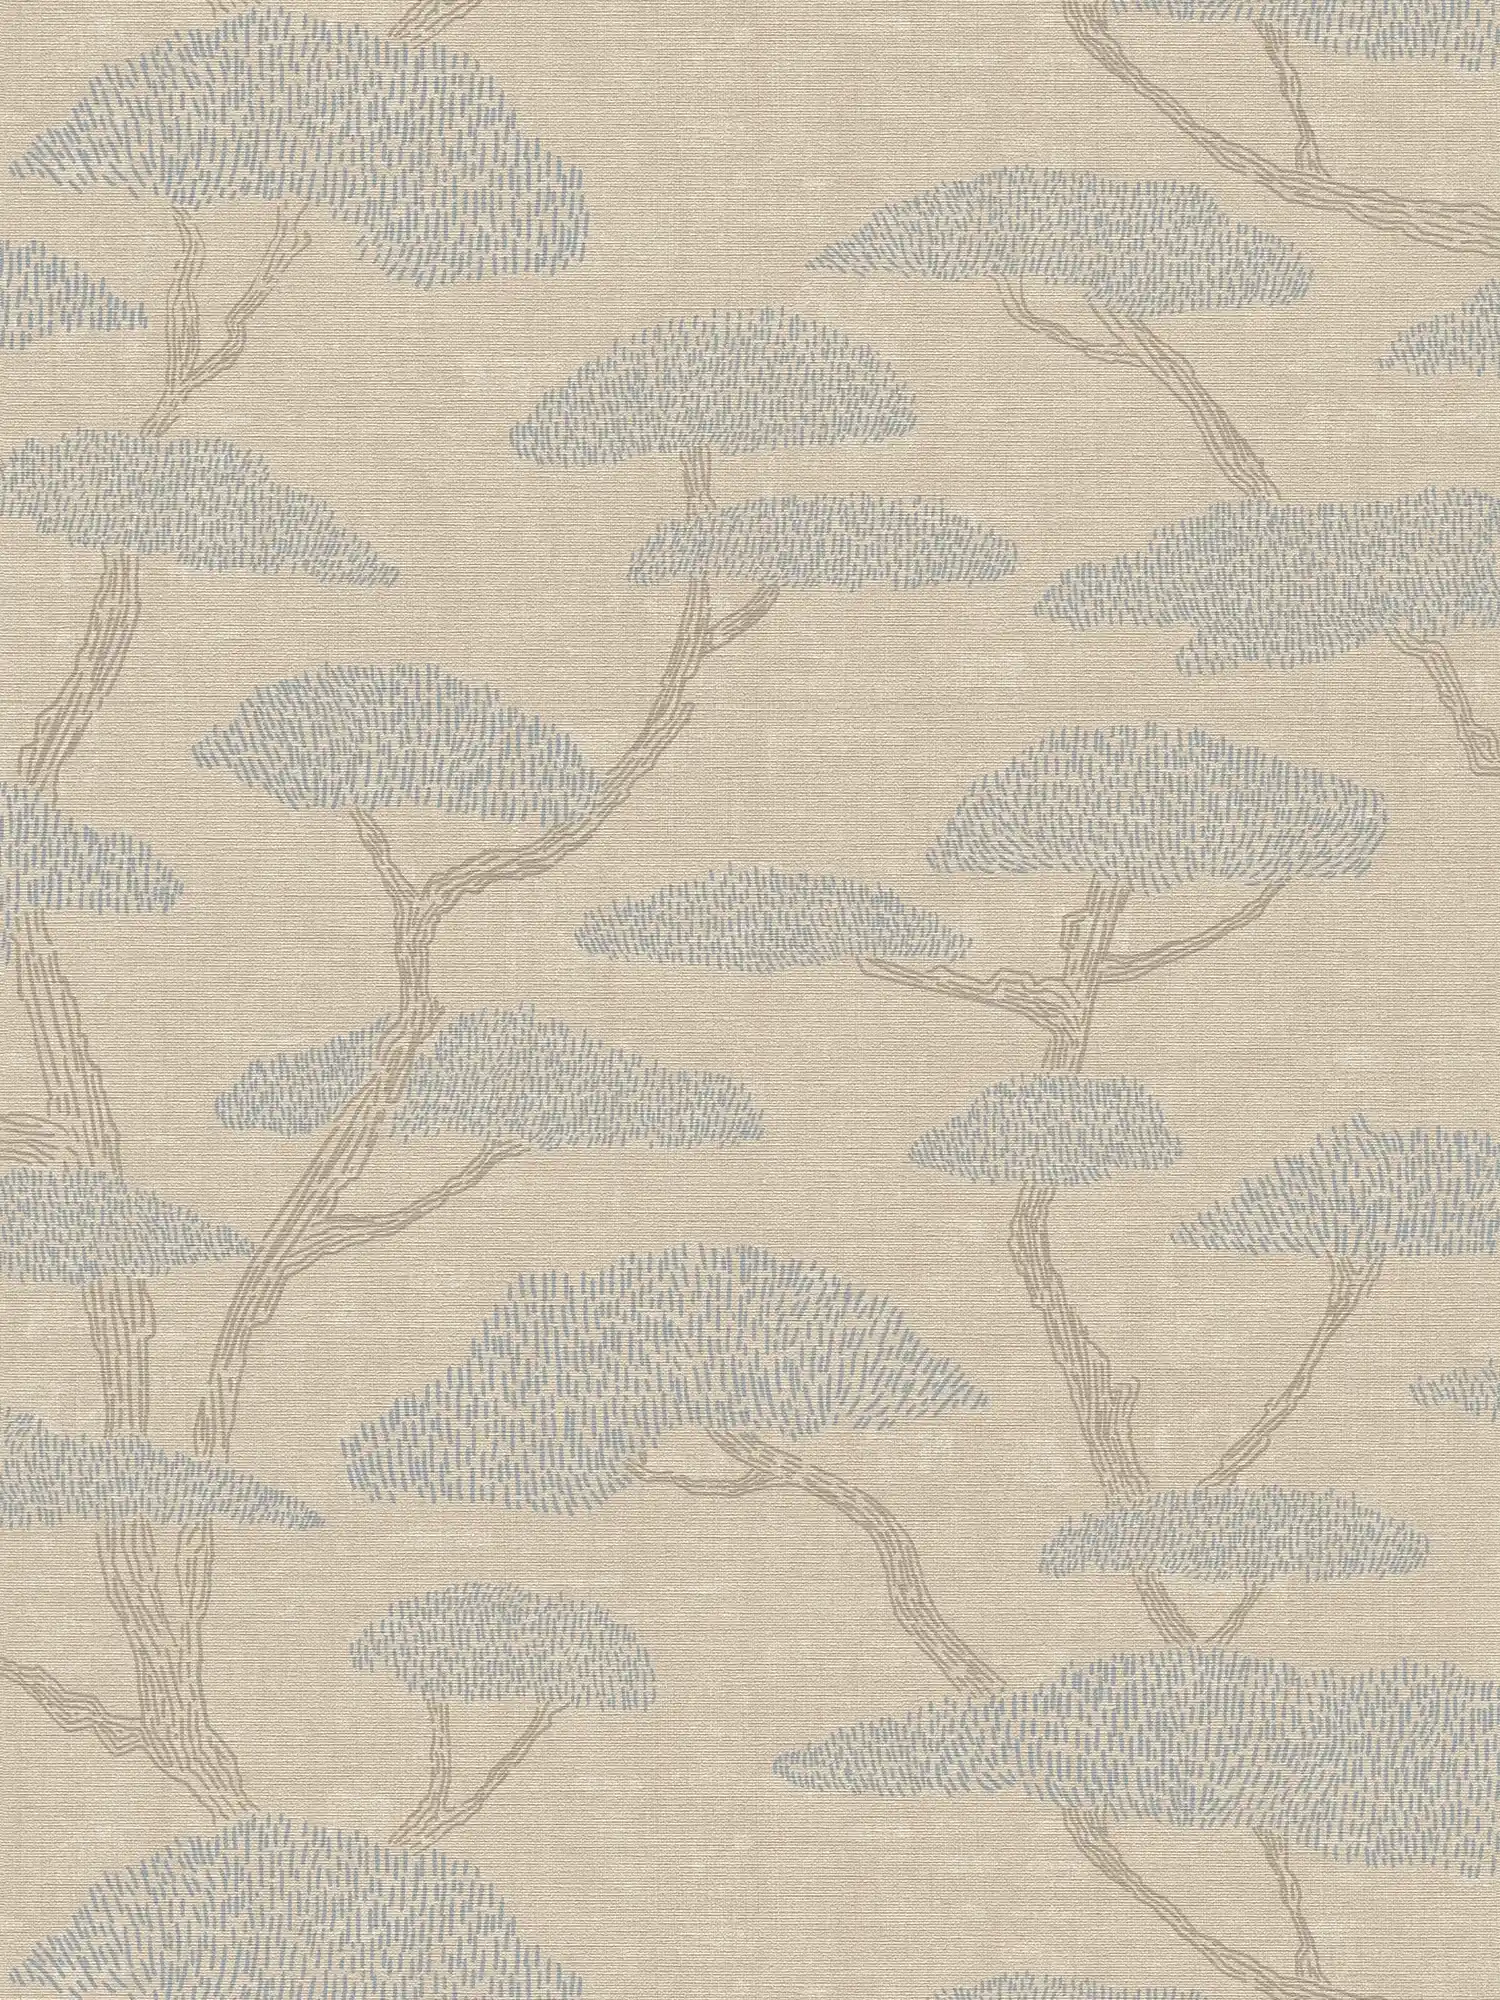 Beige behang met abstract dennenboom patroon
